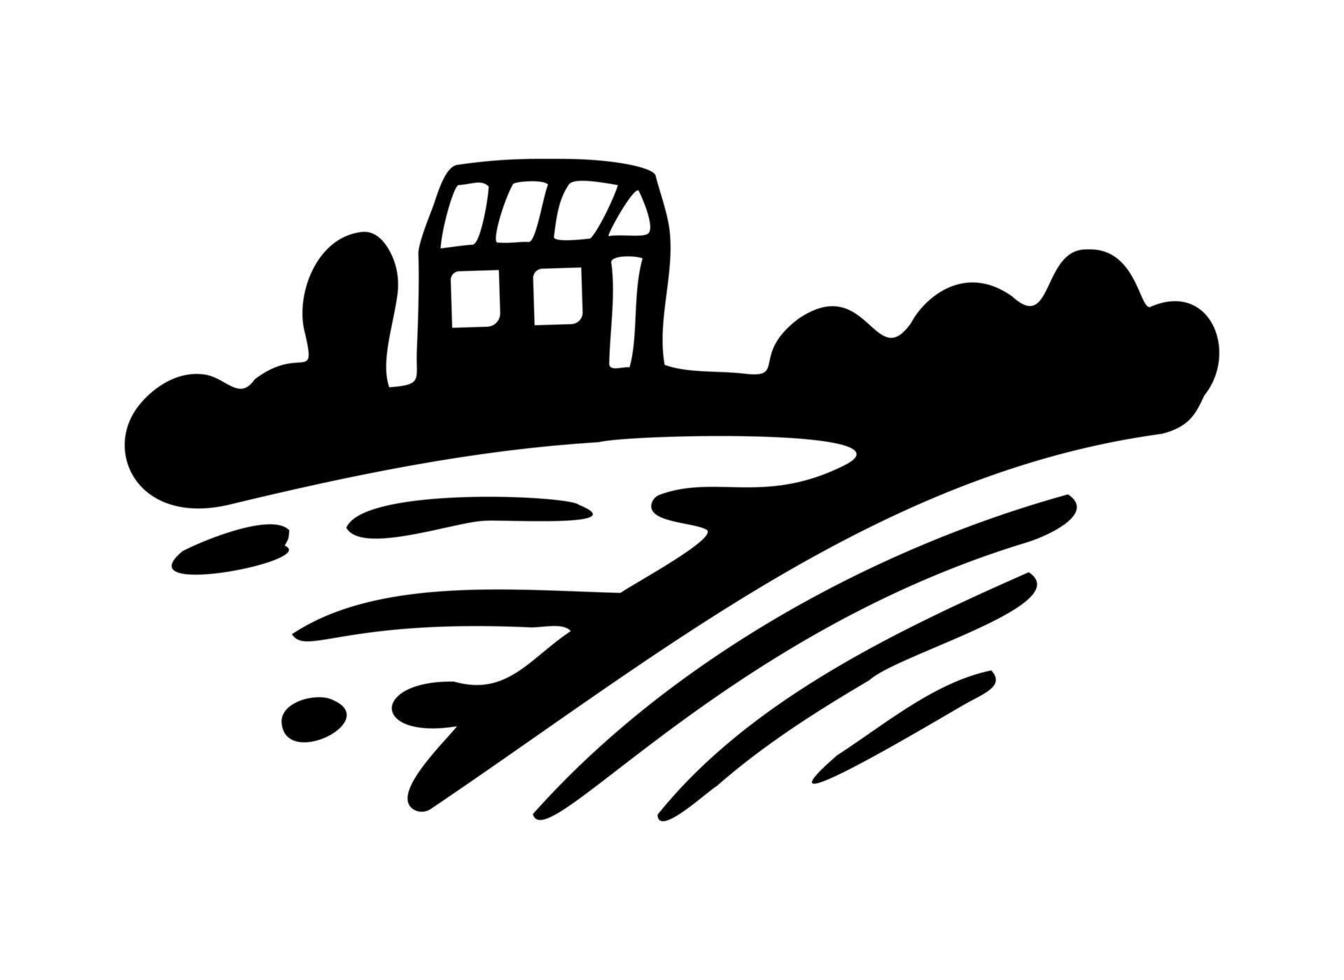 pueblo con campos y sol. paisaje rural con pequeña granja y árboles. estilo de grabado dibujado a mano. diseño gráfico del dibujo del logotipo del garabato. vector